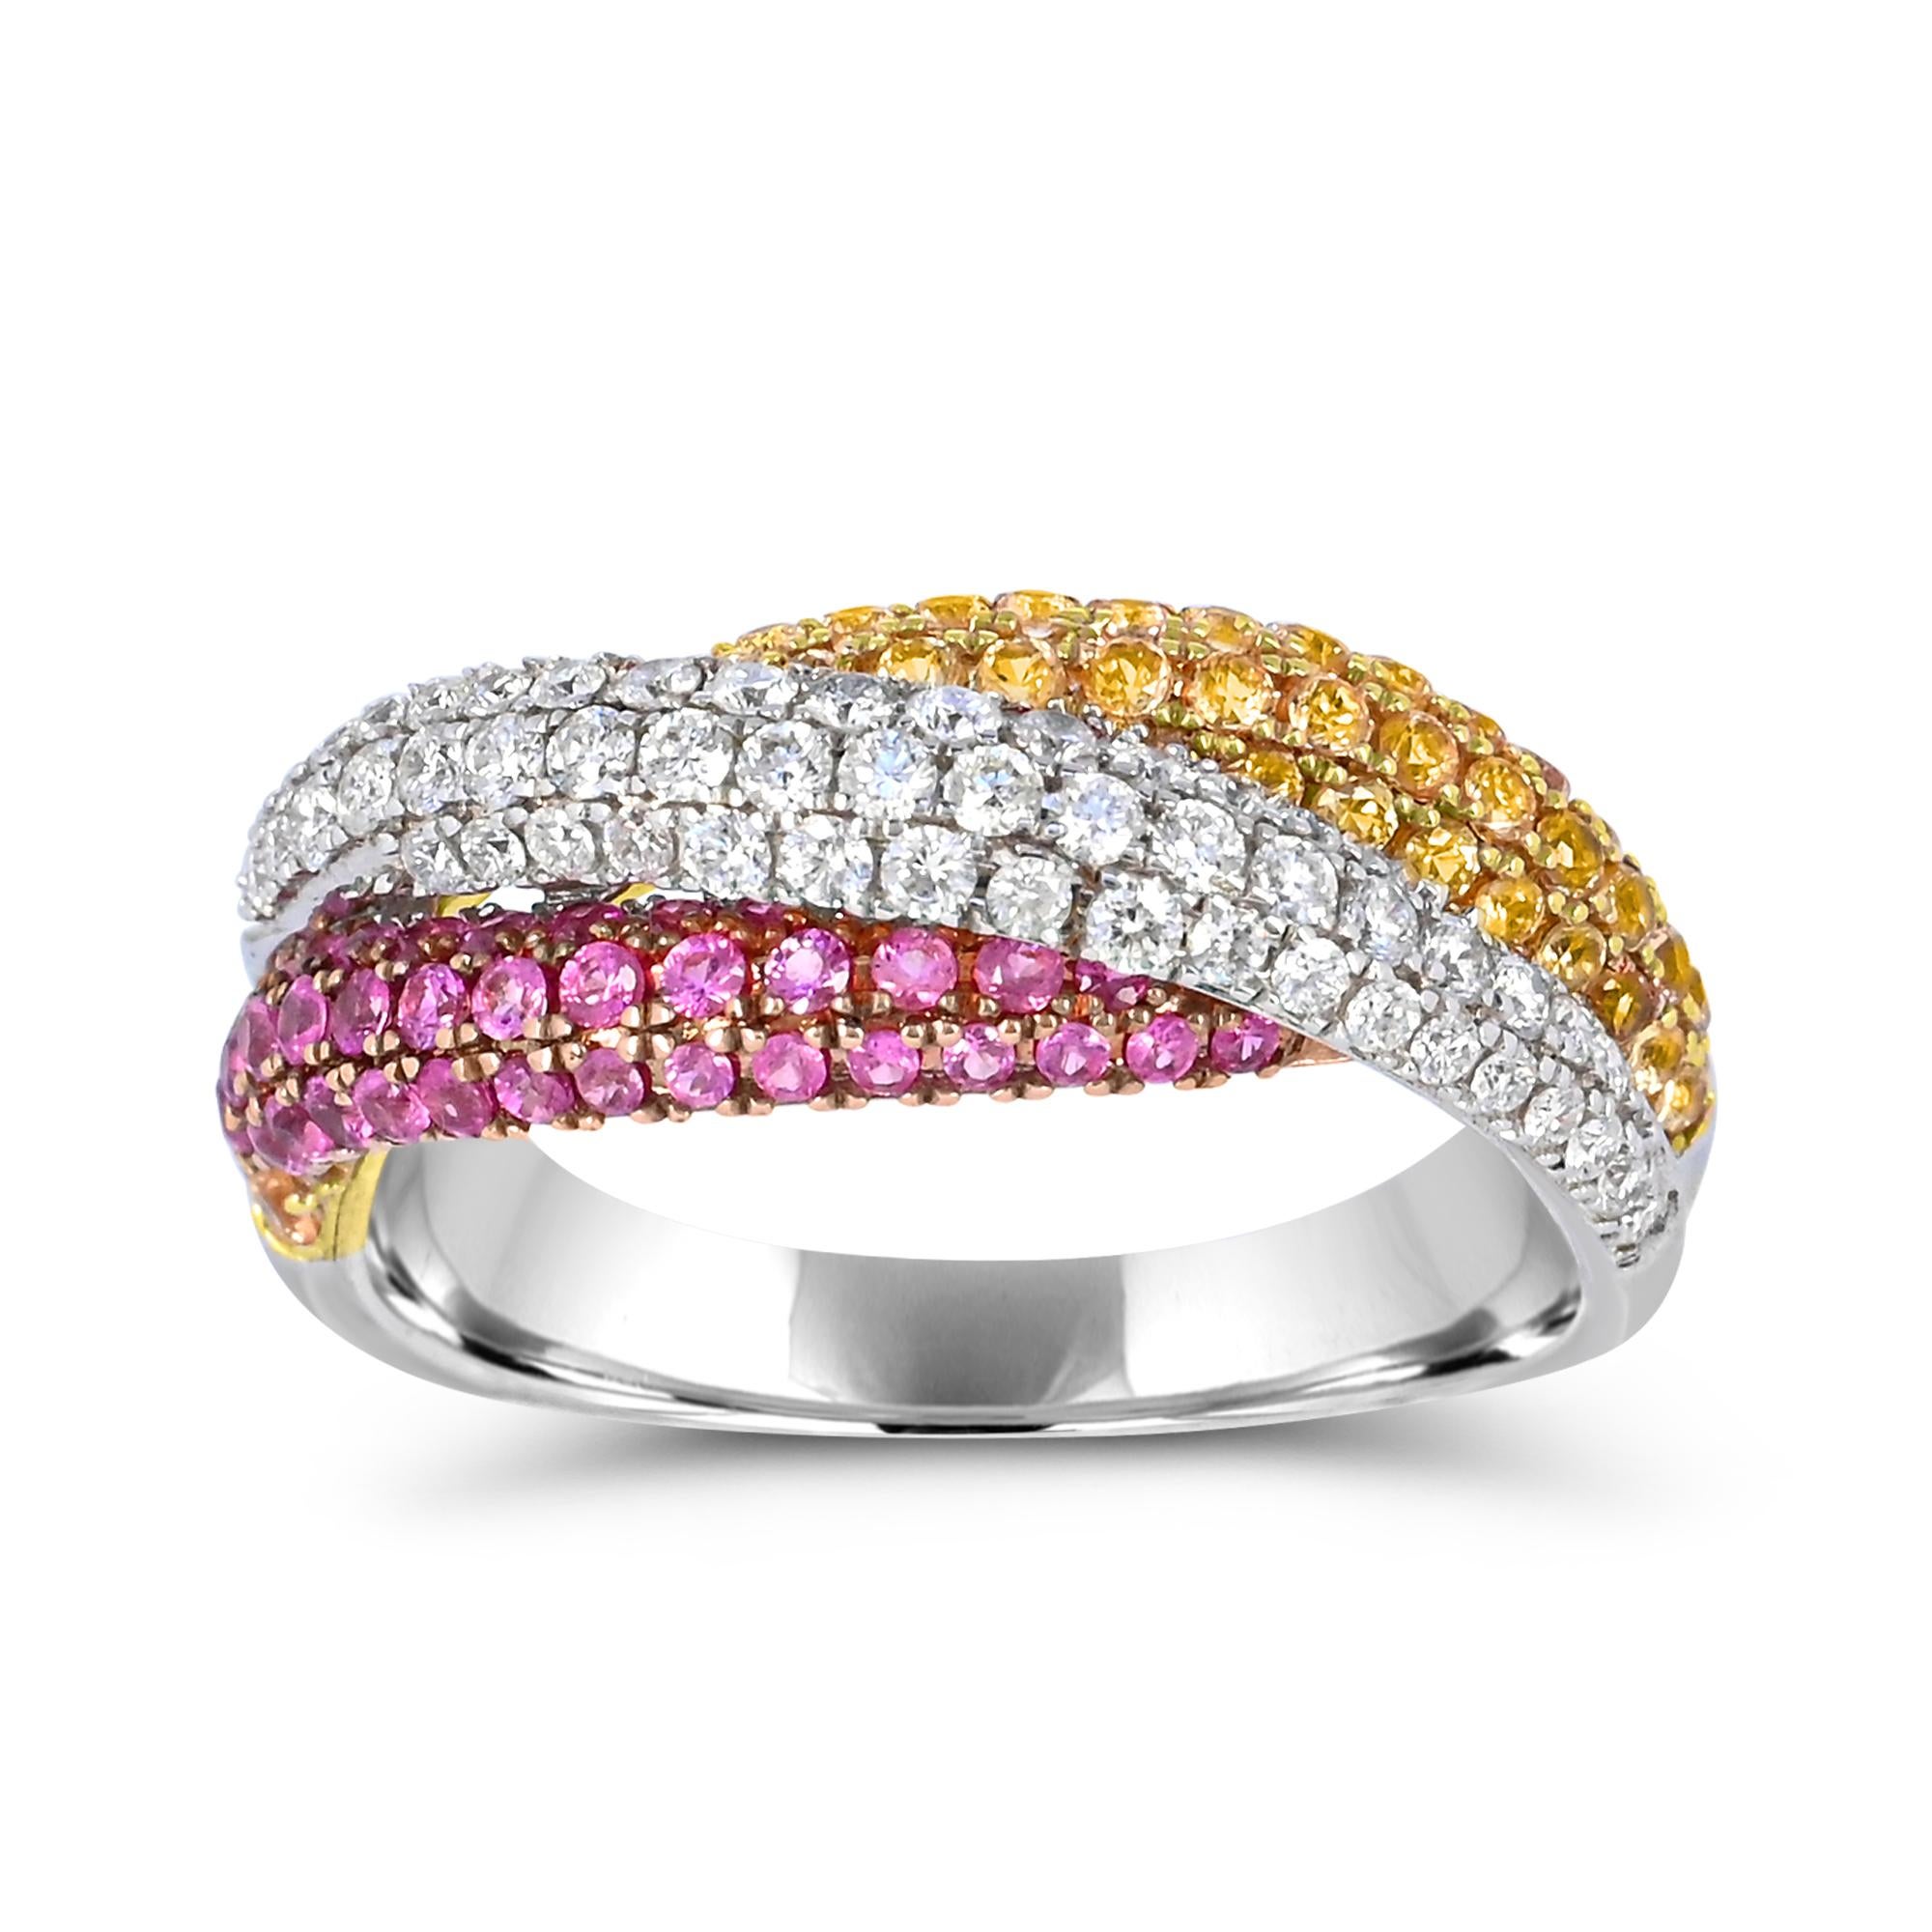 Gönnen Sie sich den Glanz unseres Bypass-Rings aus 14-karätigem Weißgold mit gelbem und rosa Saphir sowie weißen Diamanten. Dieser mit viel Liebe zum Detail gefertigte Ring besticht durch eine prächtige Kombination aus funkelnden runden weißen